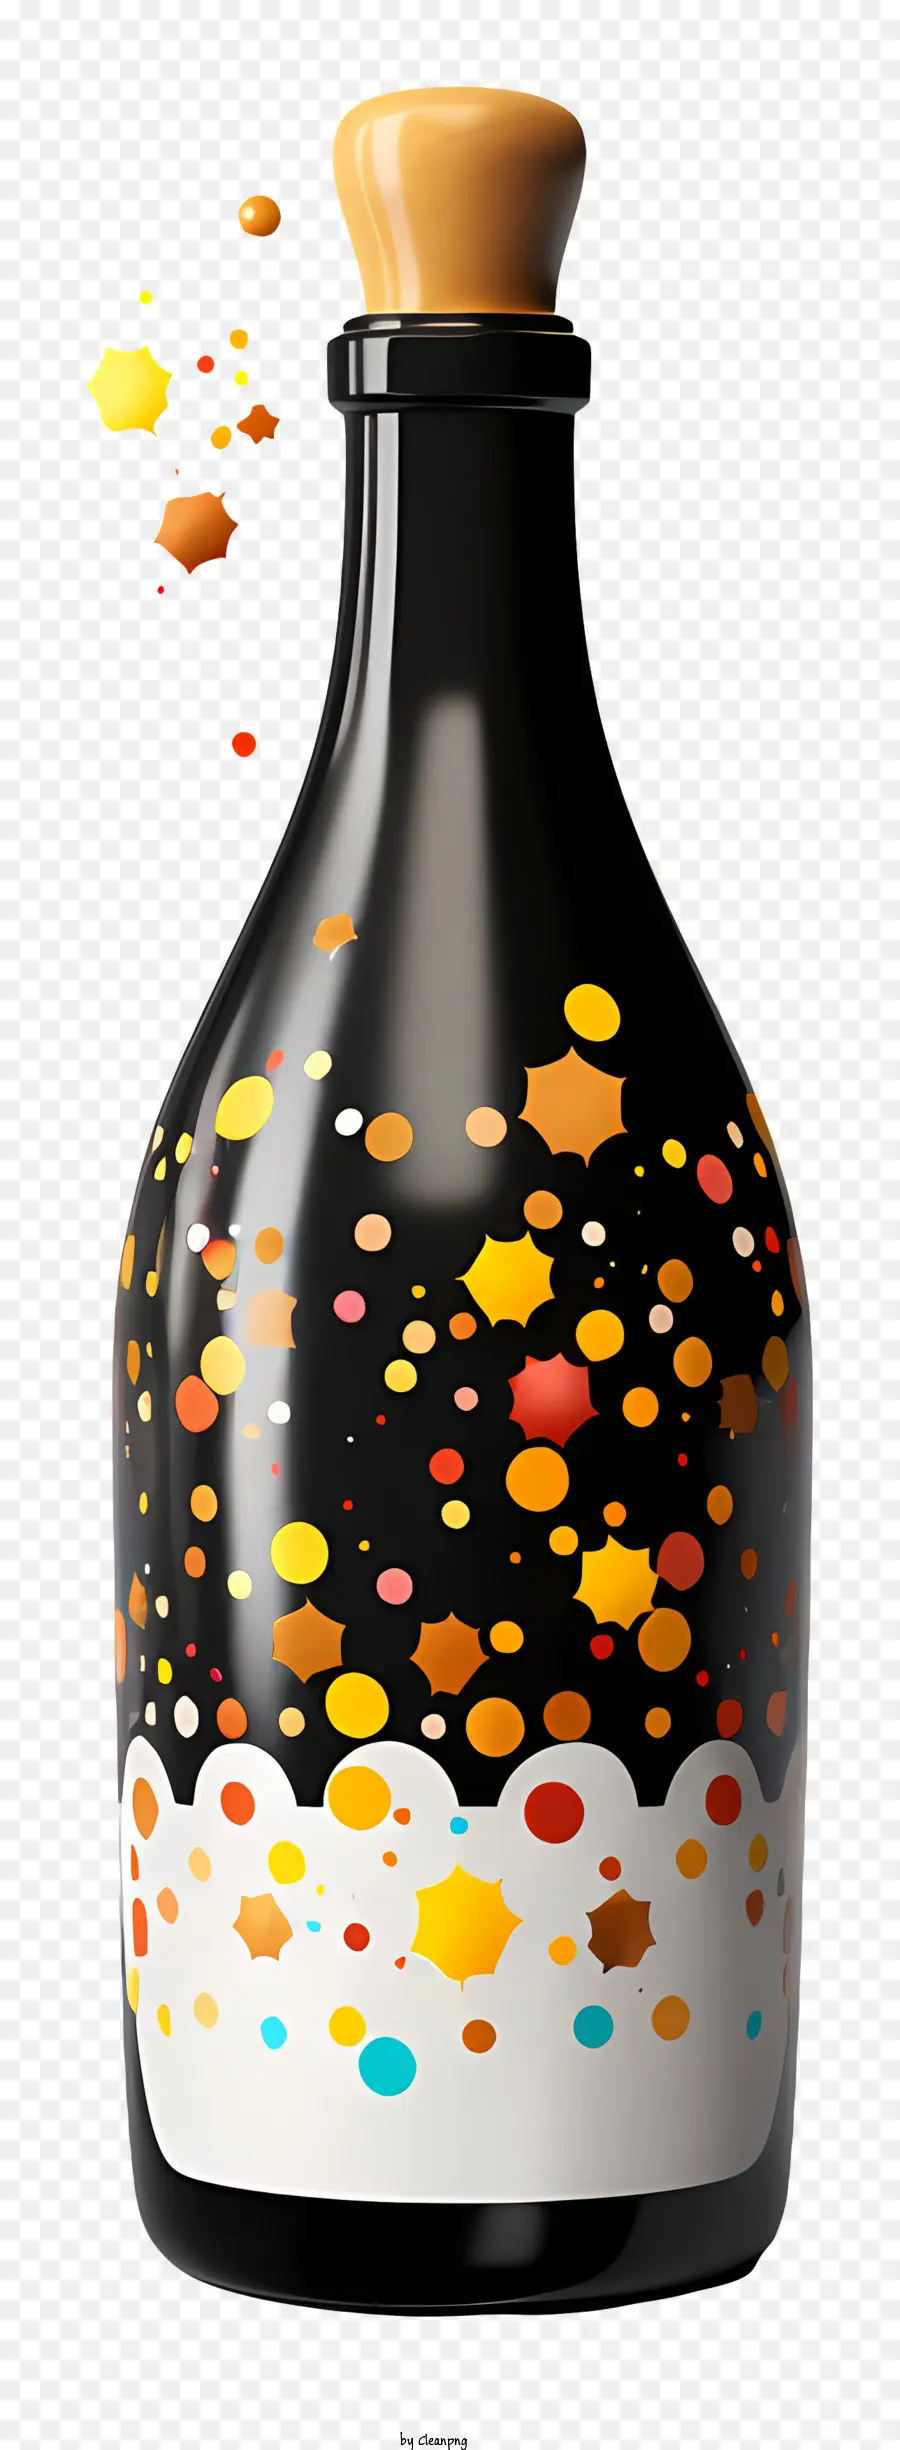 chai thủy tinh nắp bằng gỗ hoa giấy con hoa giấy lấp lánh nền màu đen - Confetti đầy màu sắc trong chai thủy tinh có nền đen